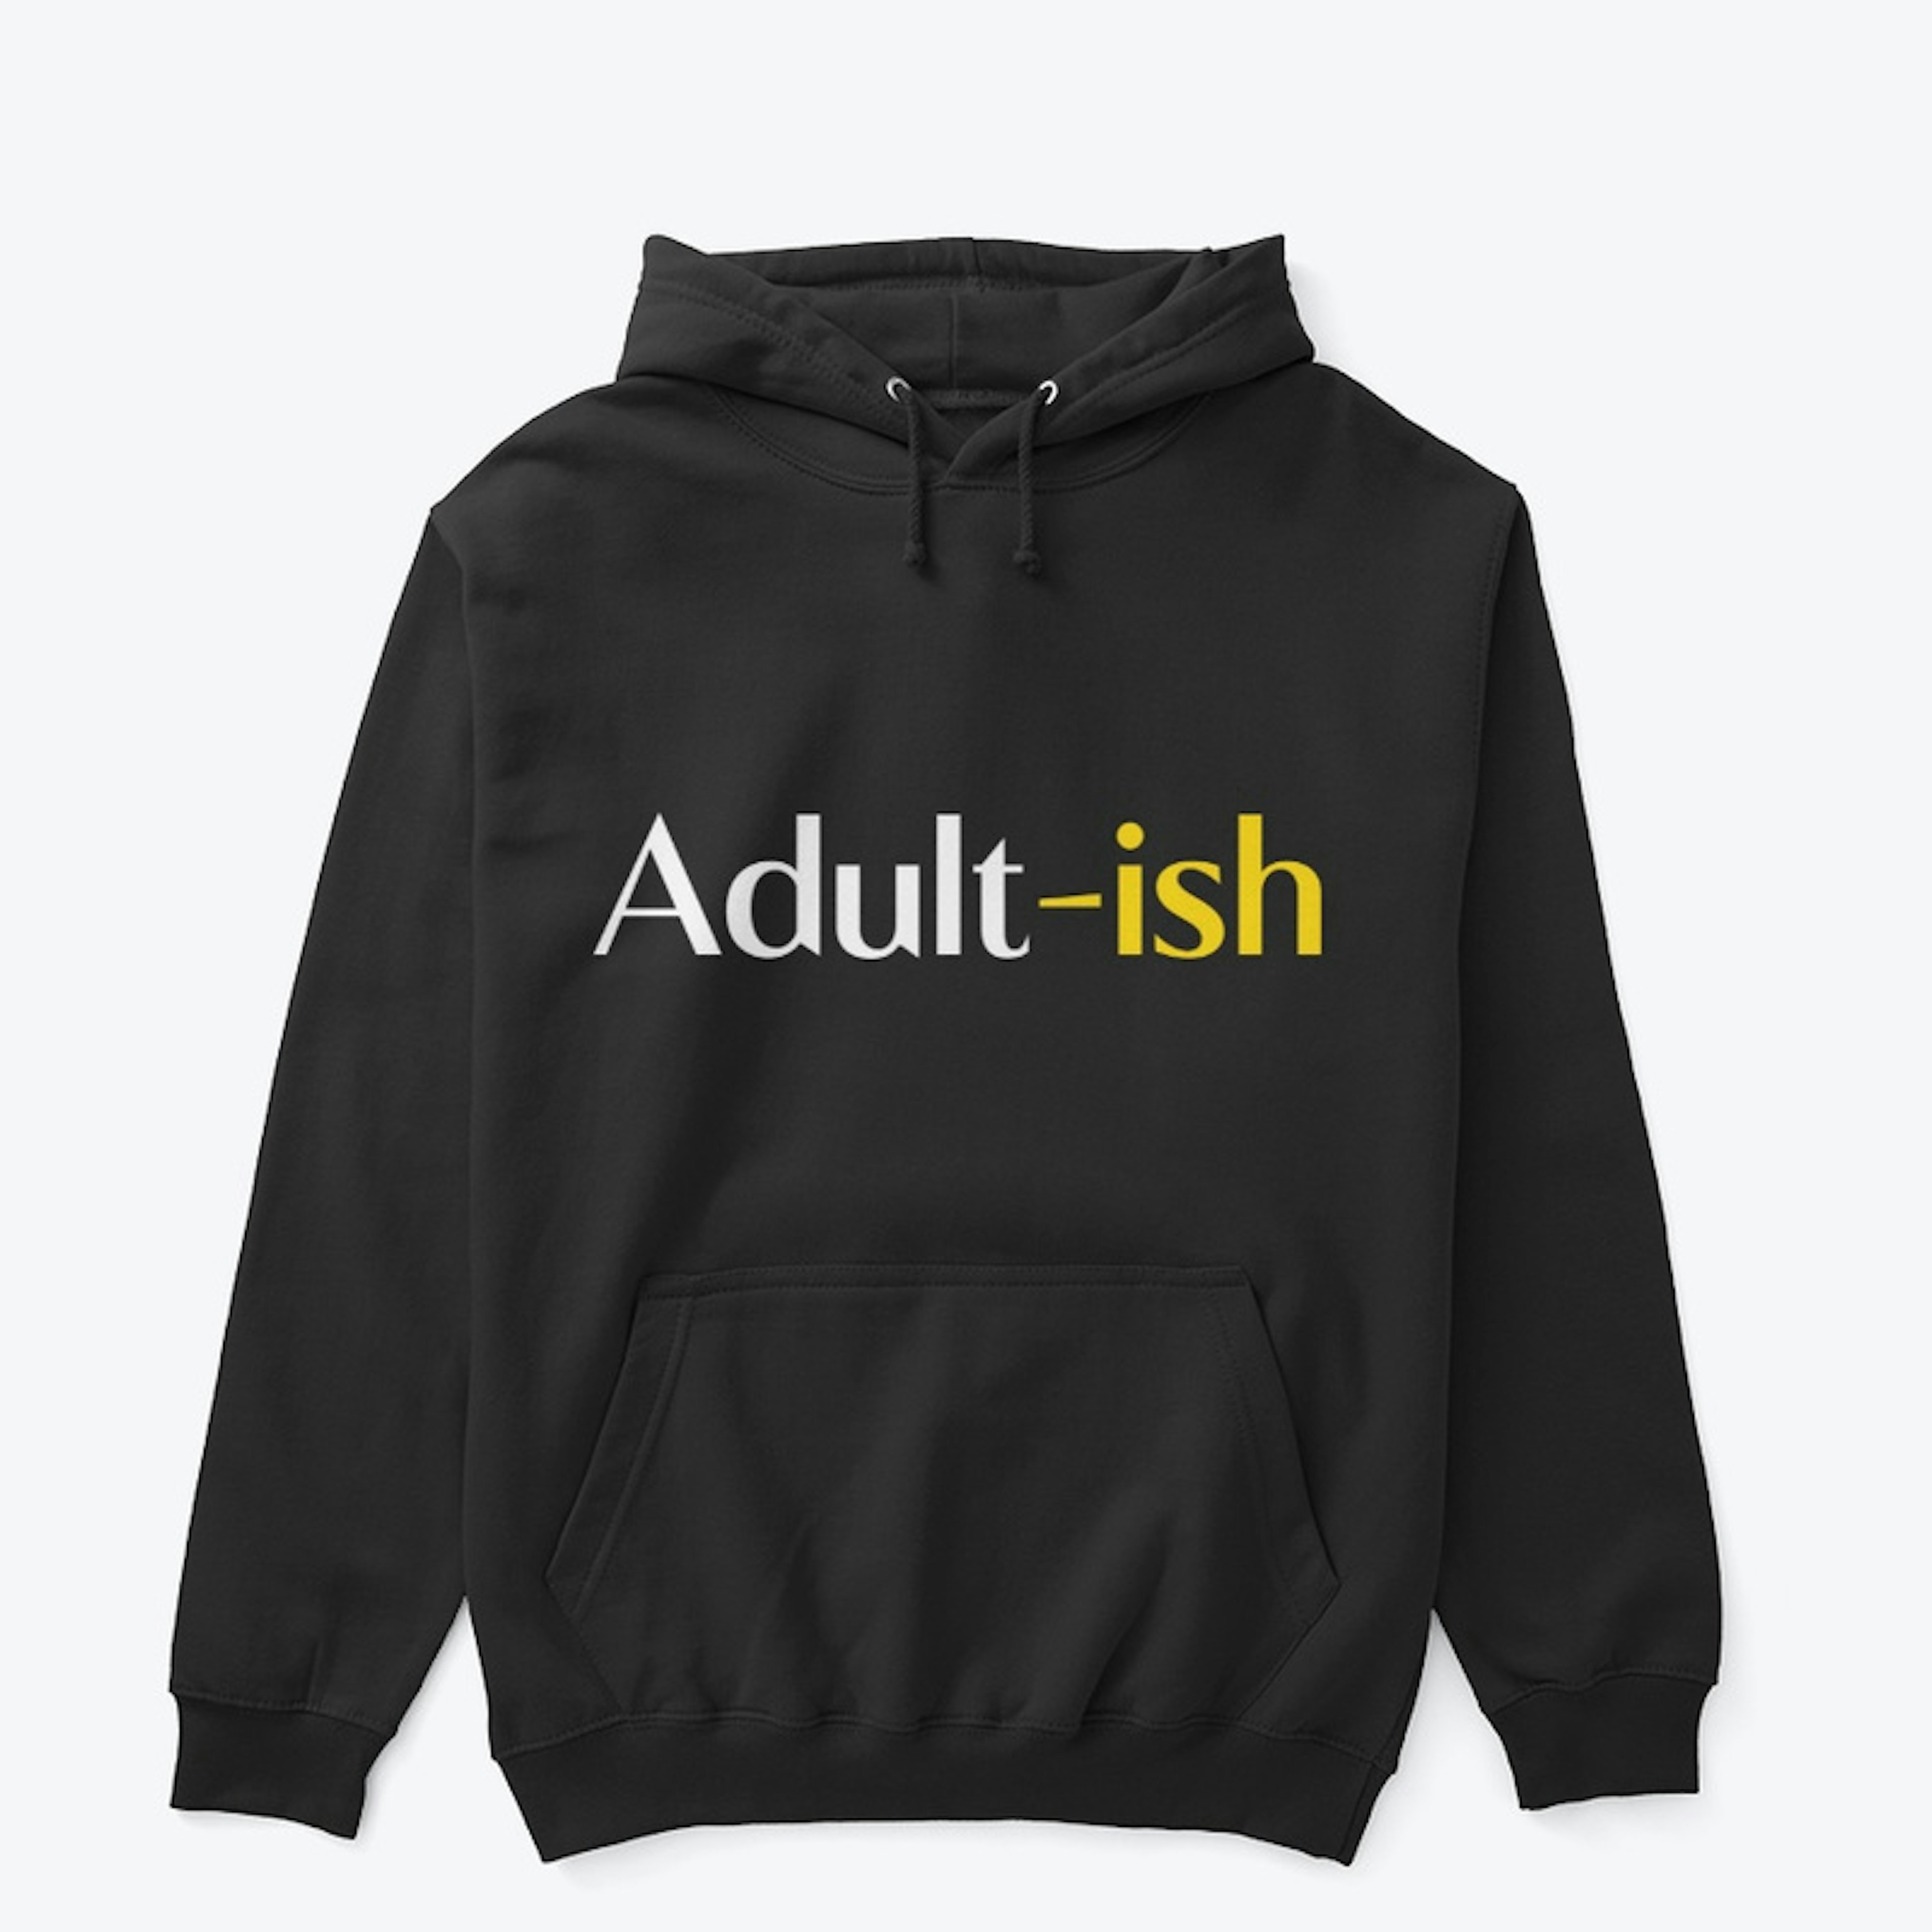 Adult - Ish